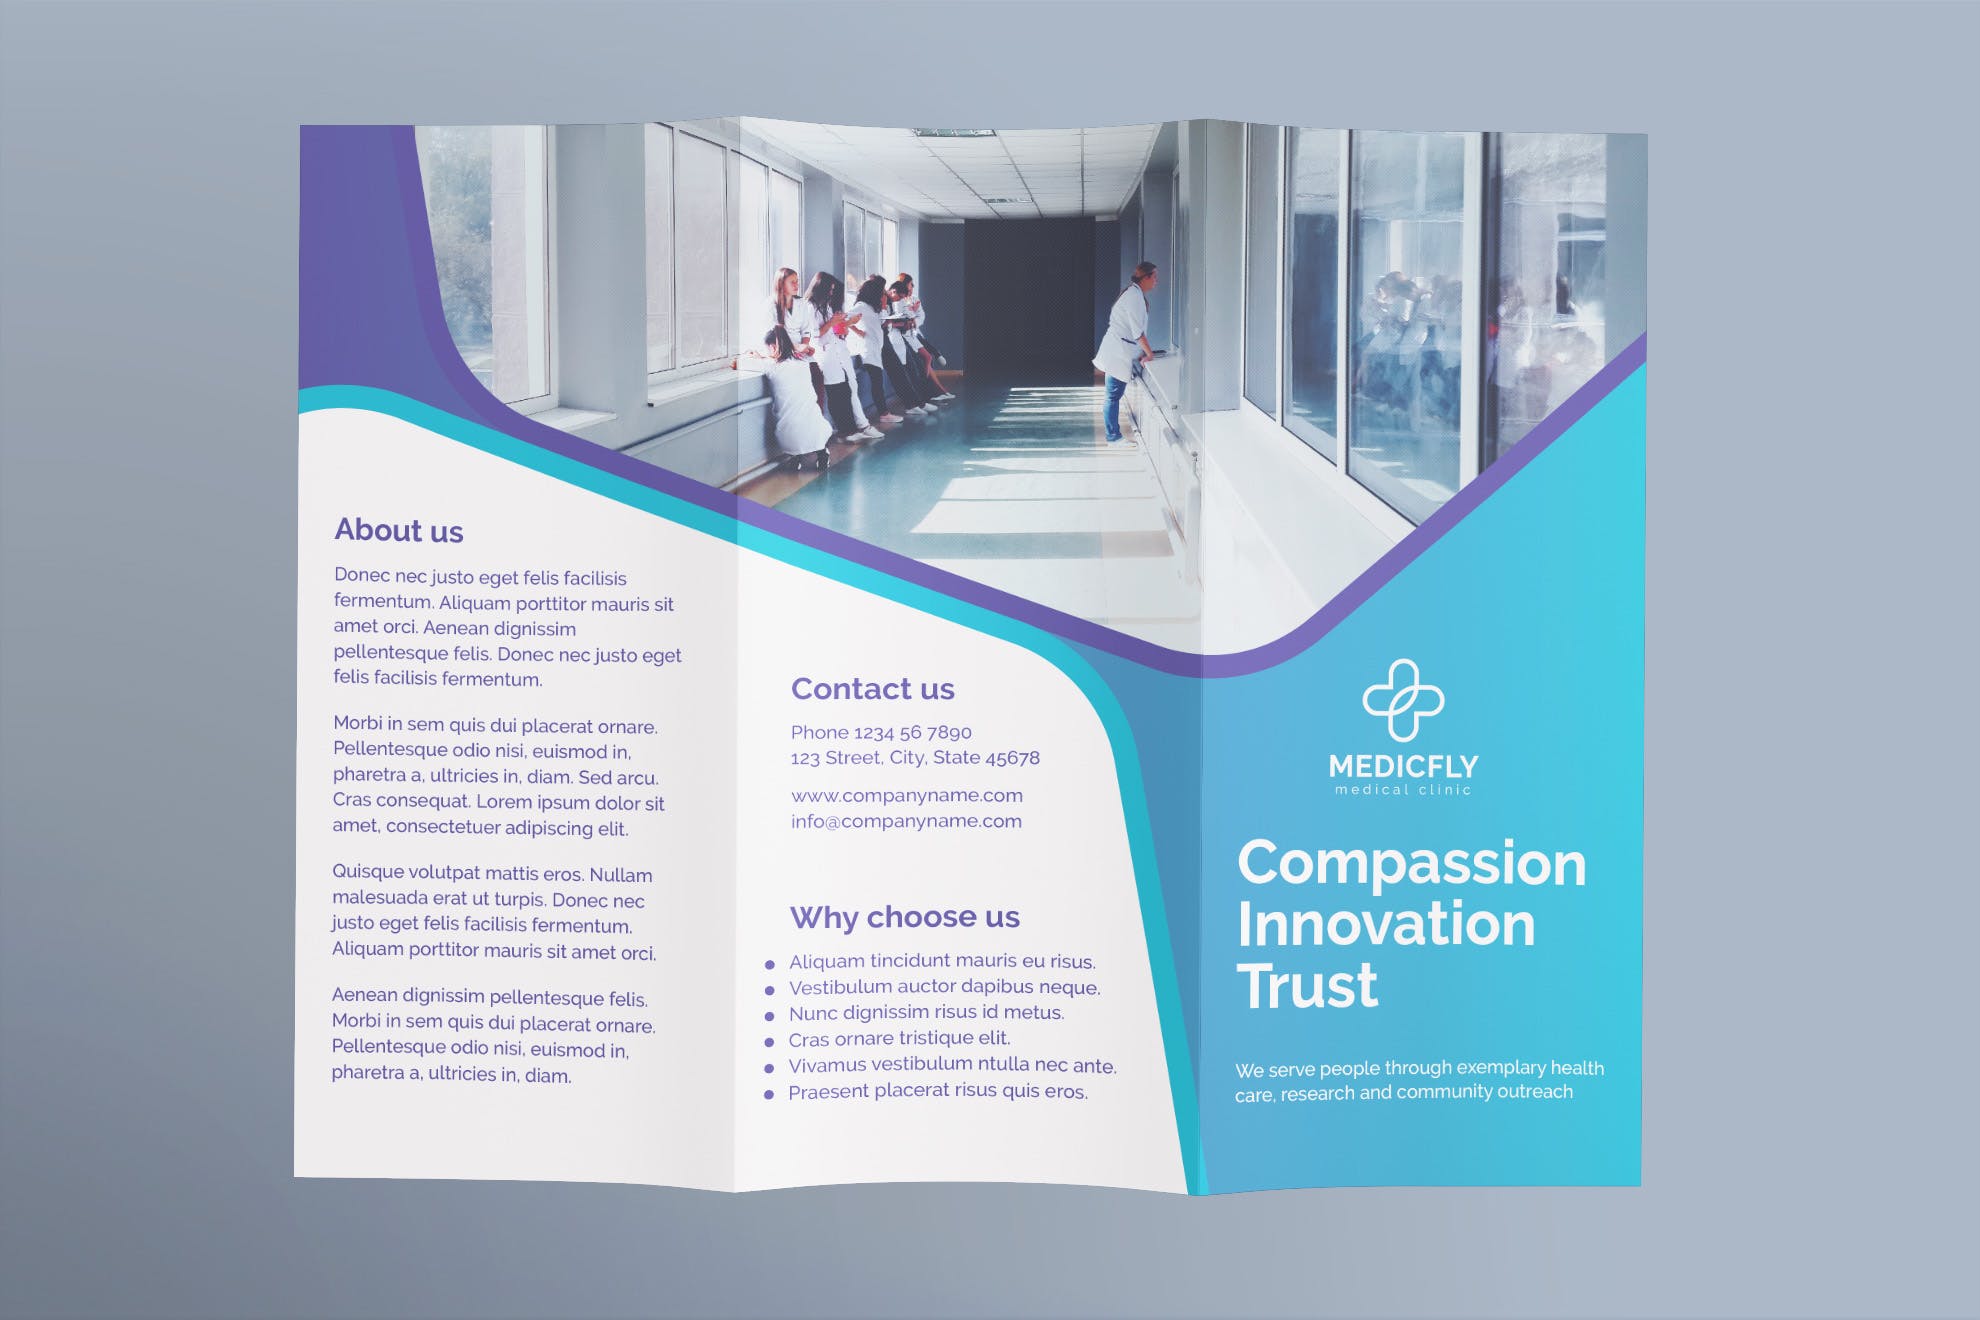 私人诊所/医院三折页宣传单设计模板 Medical Clinic Brochure Trifold插图(1)